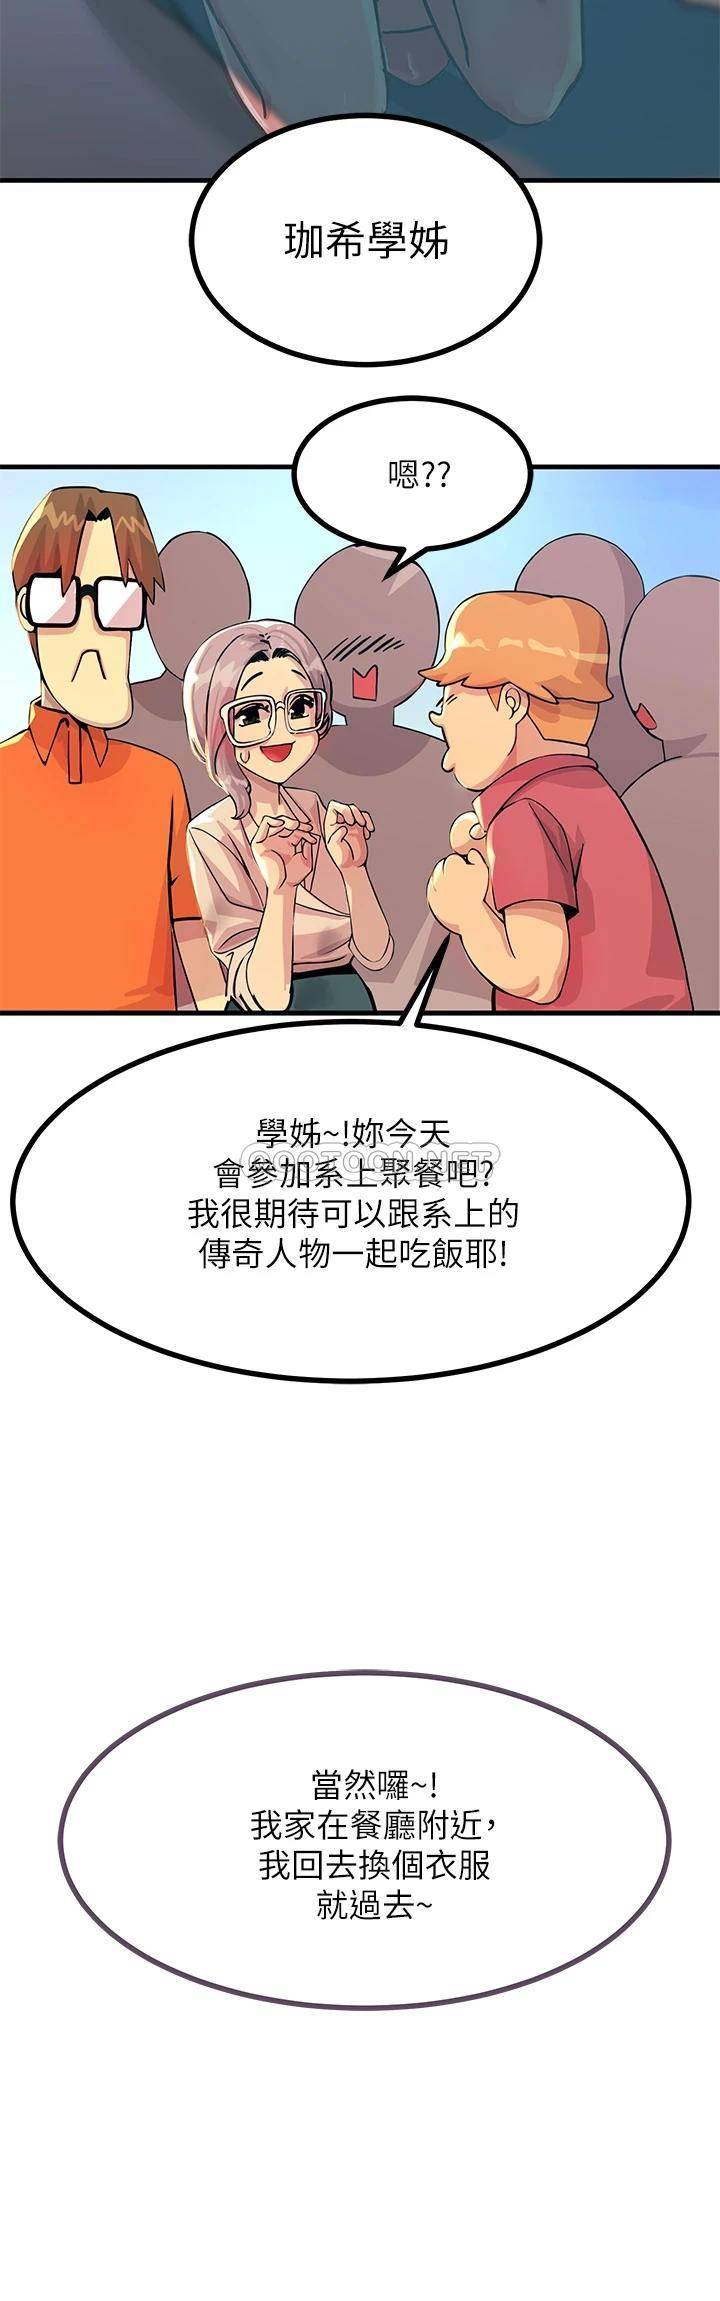 韩国污漫画 觸電大師 第2话 和性感胴体的亲密接触 17